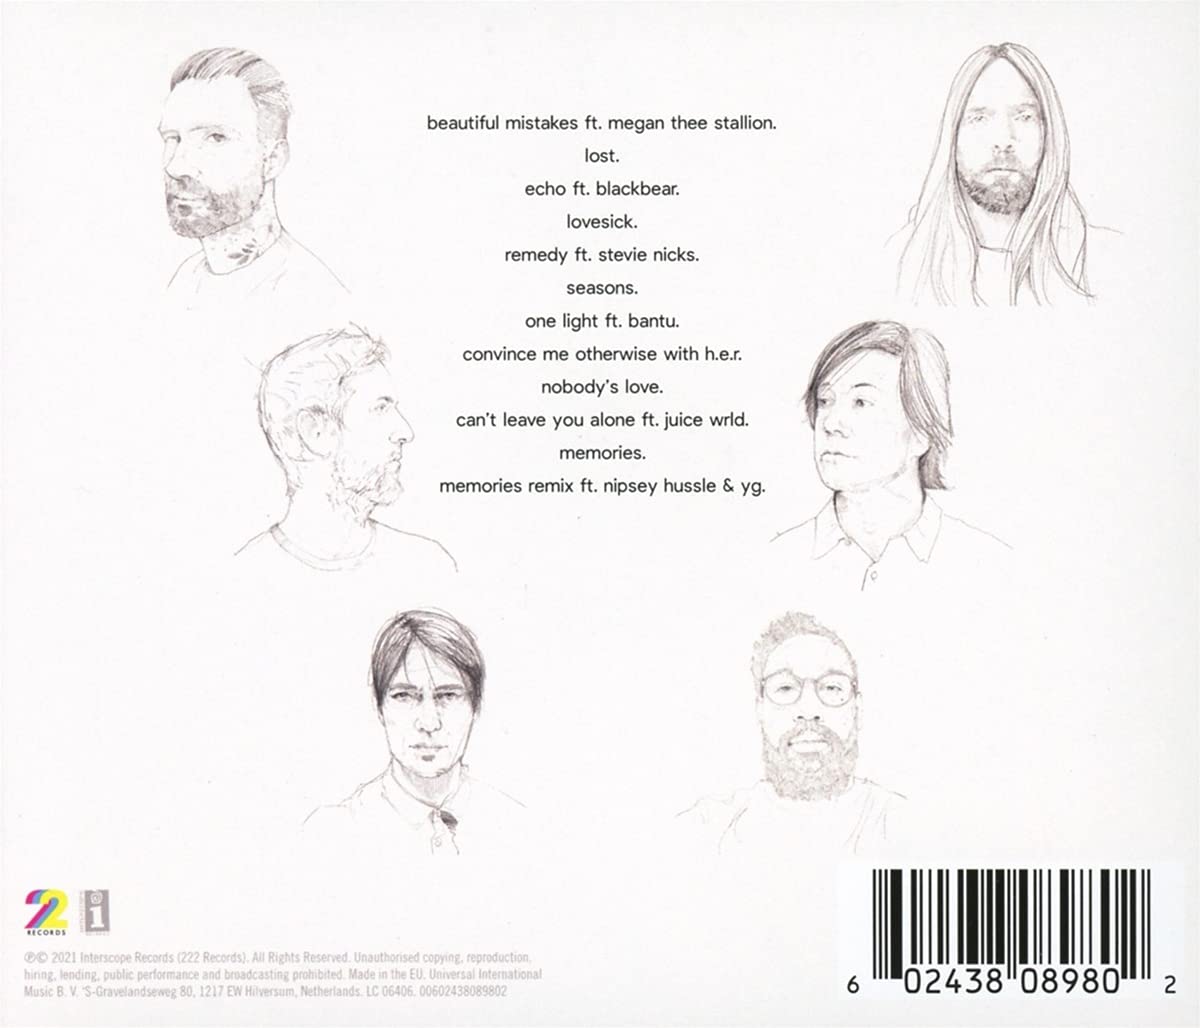 Maroon 5 album